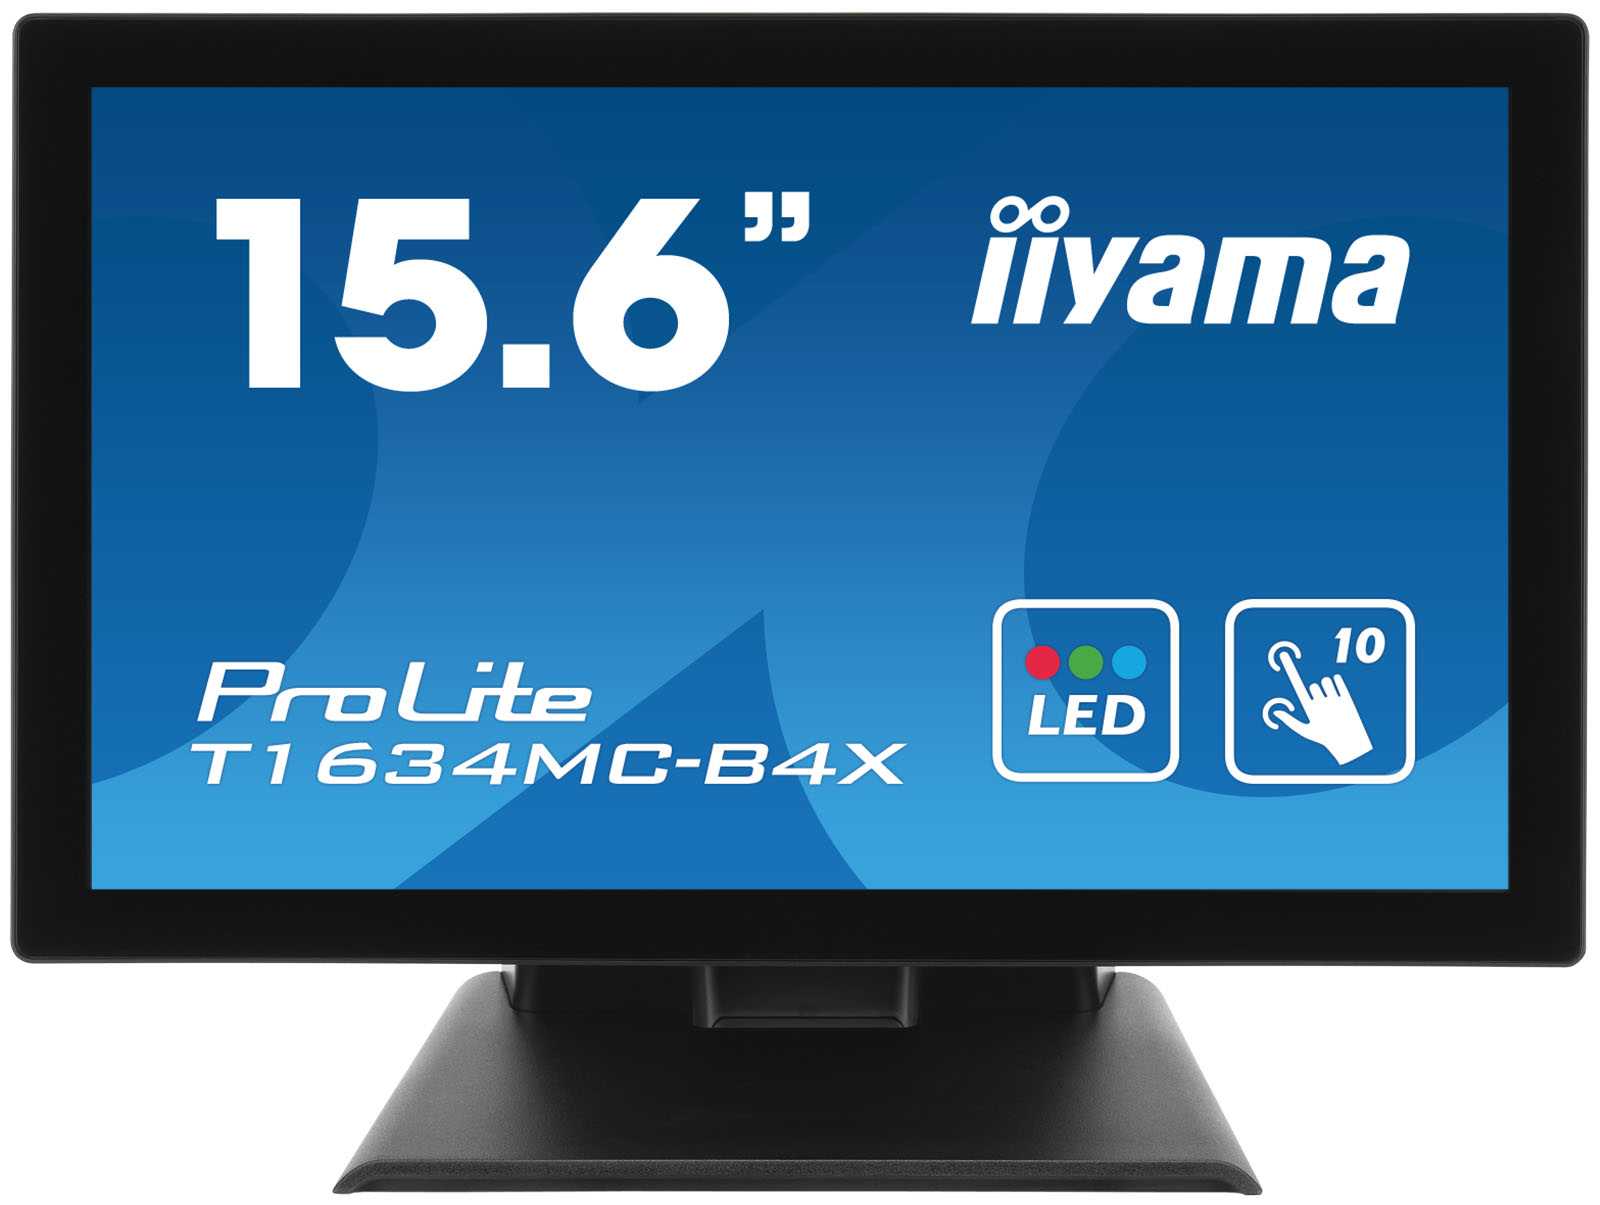 Жк монитор 21.5" iiyama prolite t2252mts-b1 — купить, цена и характеристики, отзывы